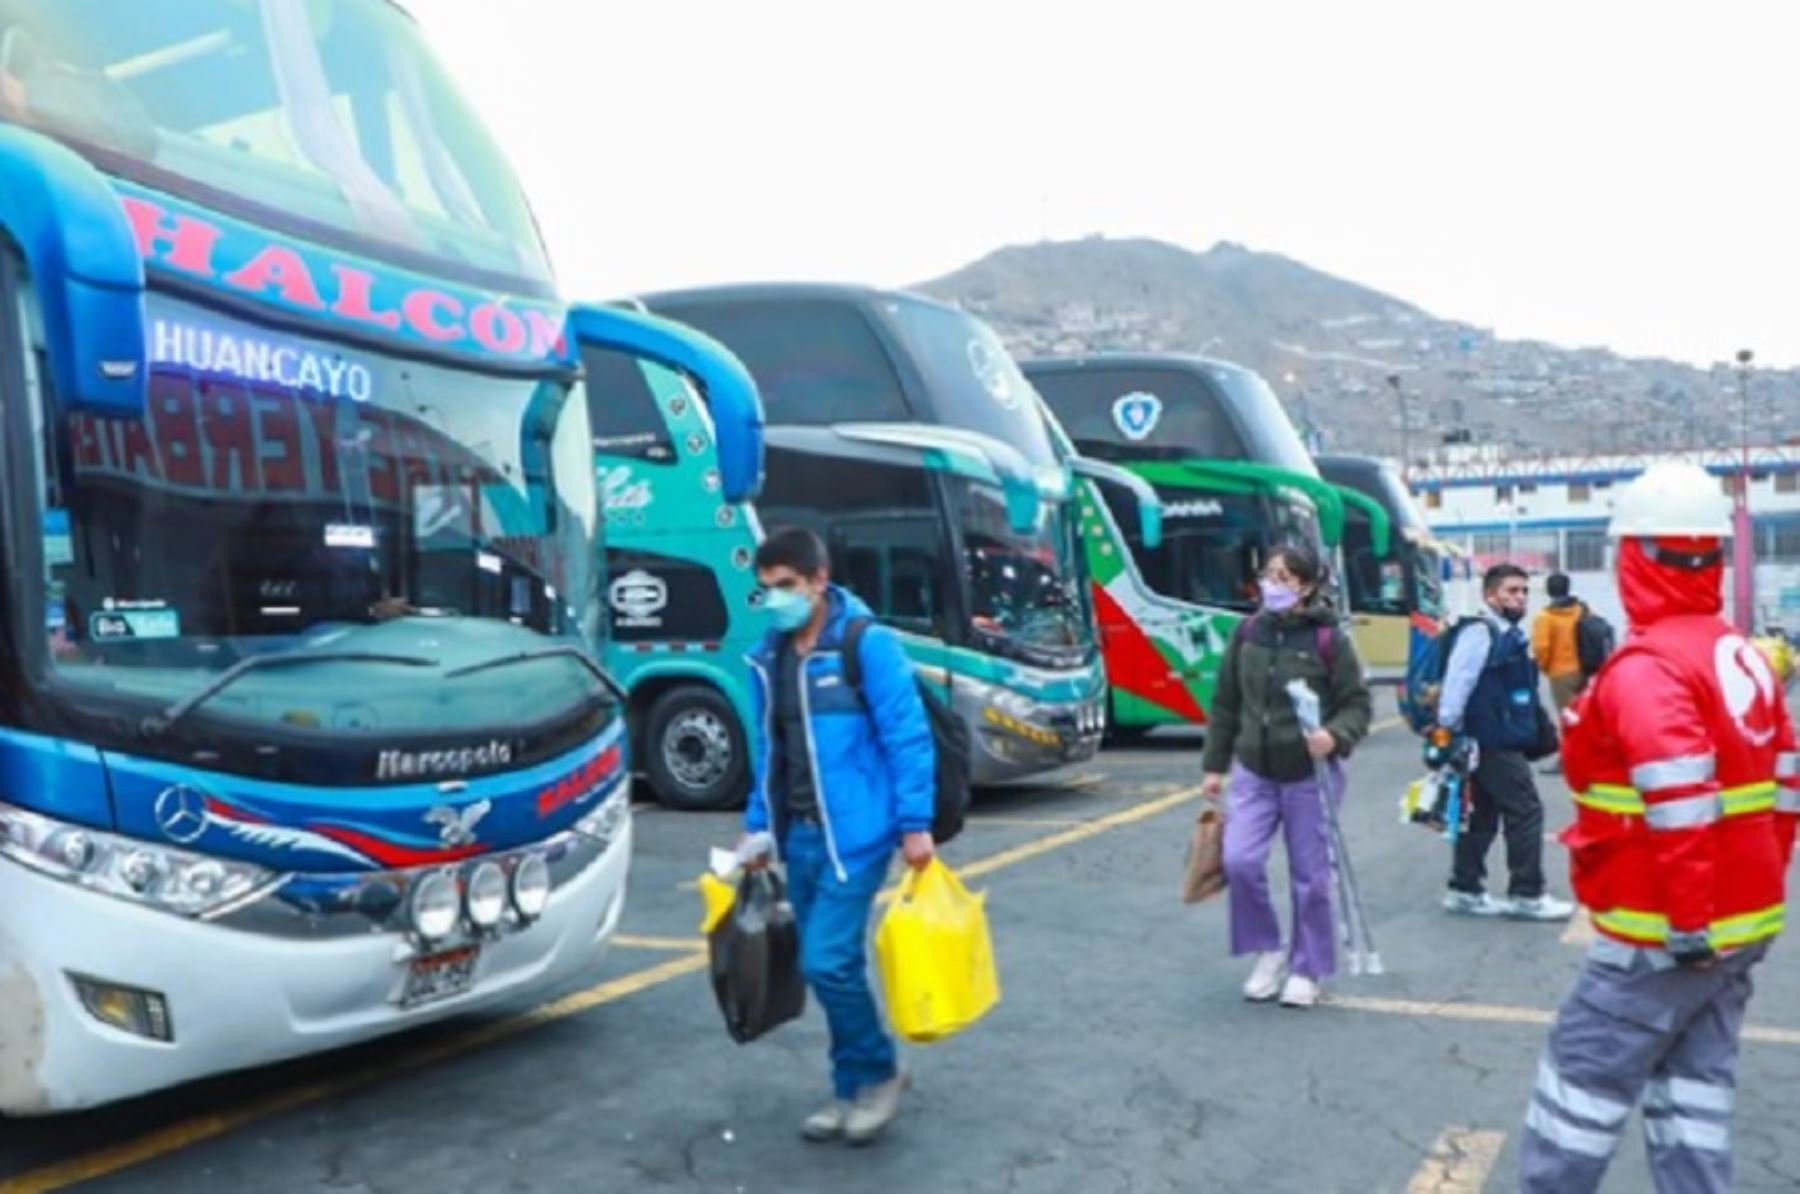 Sigue siendo obligatorio el uso de mascarilla en los buses interprovinciales. Foto: Andina